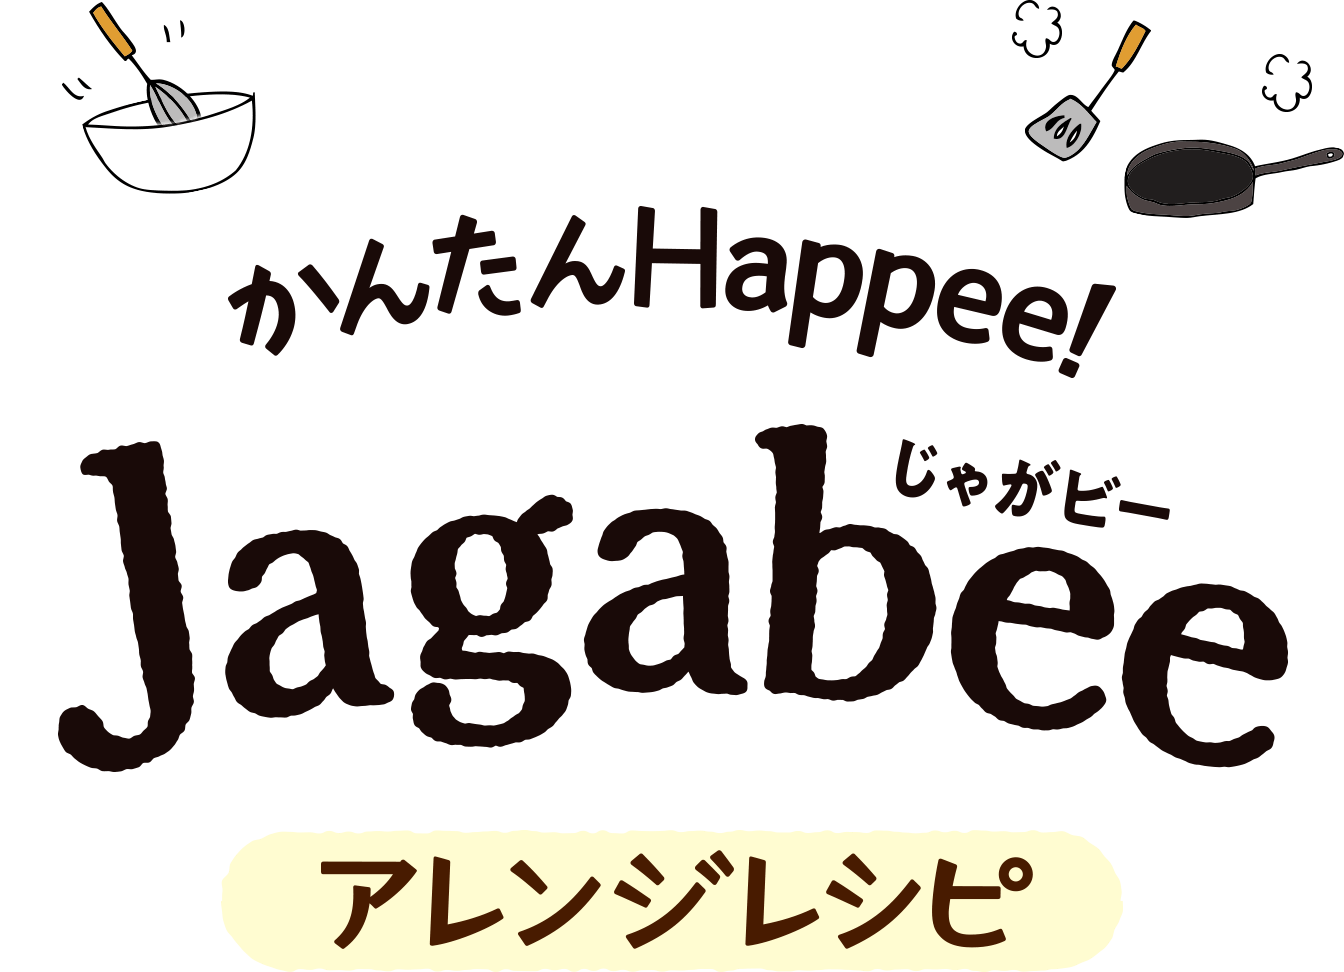 かんたんHappee!Jagabee（じゃがビー）アレンジレシピ